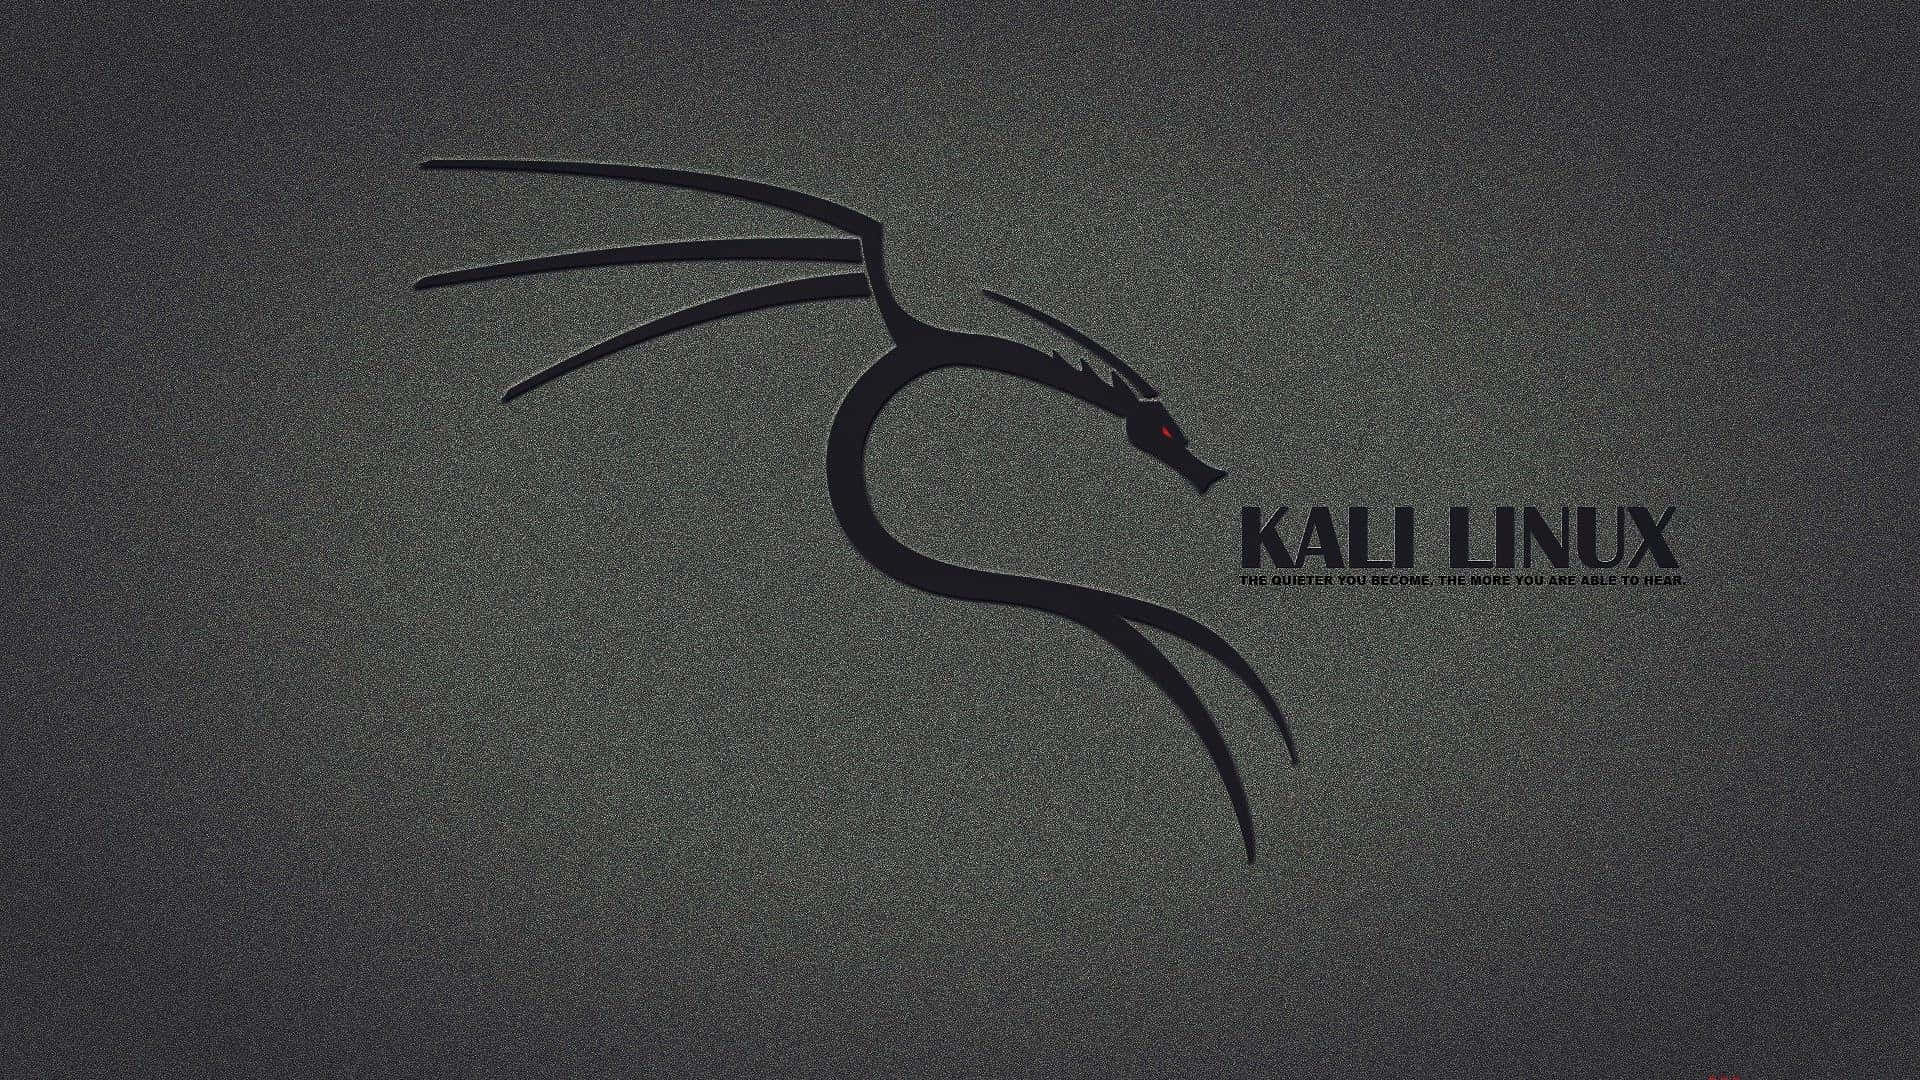 Etimponerende Billede Af Kali Linux' Grafiske Brugerflade.